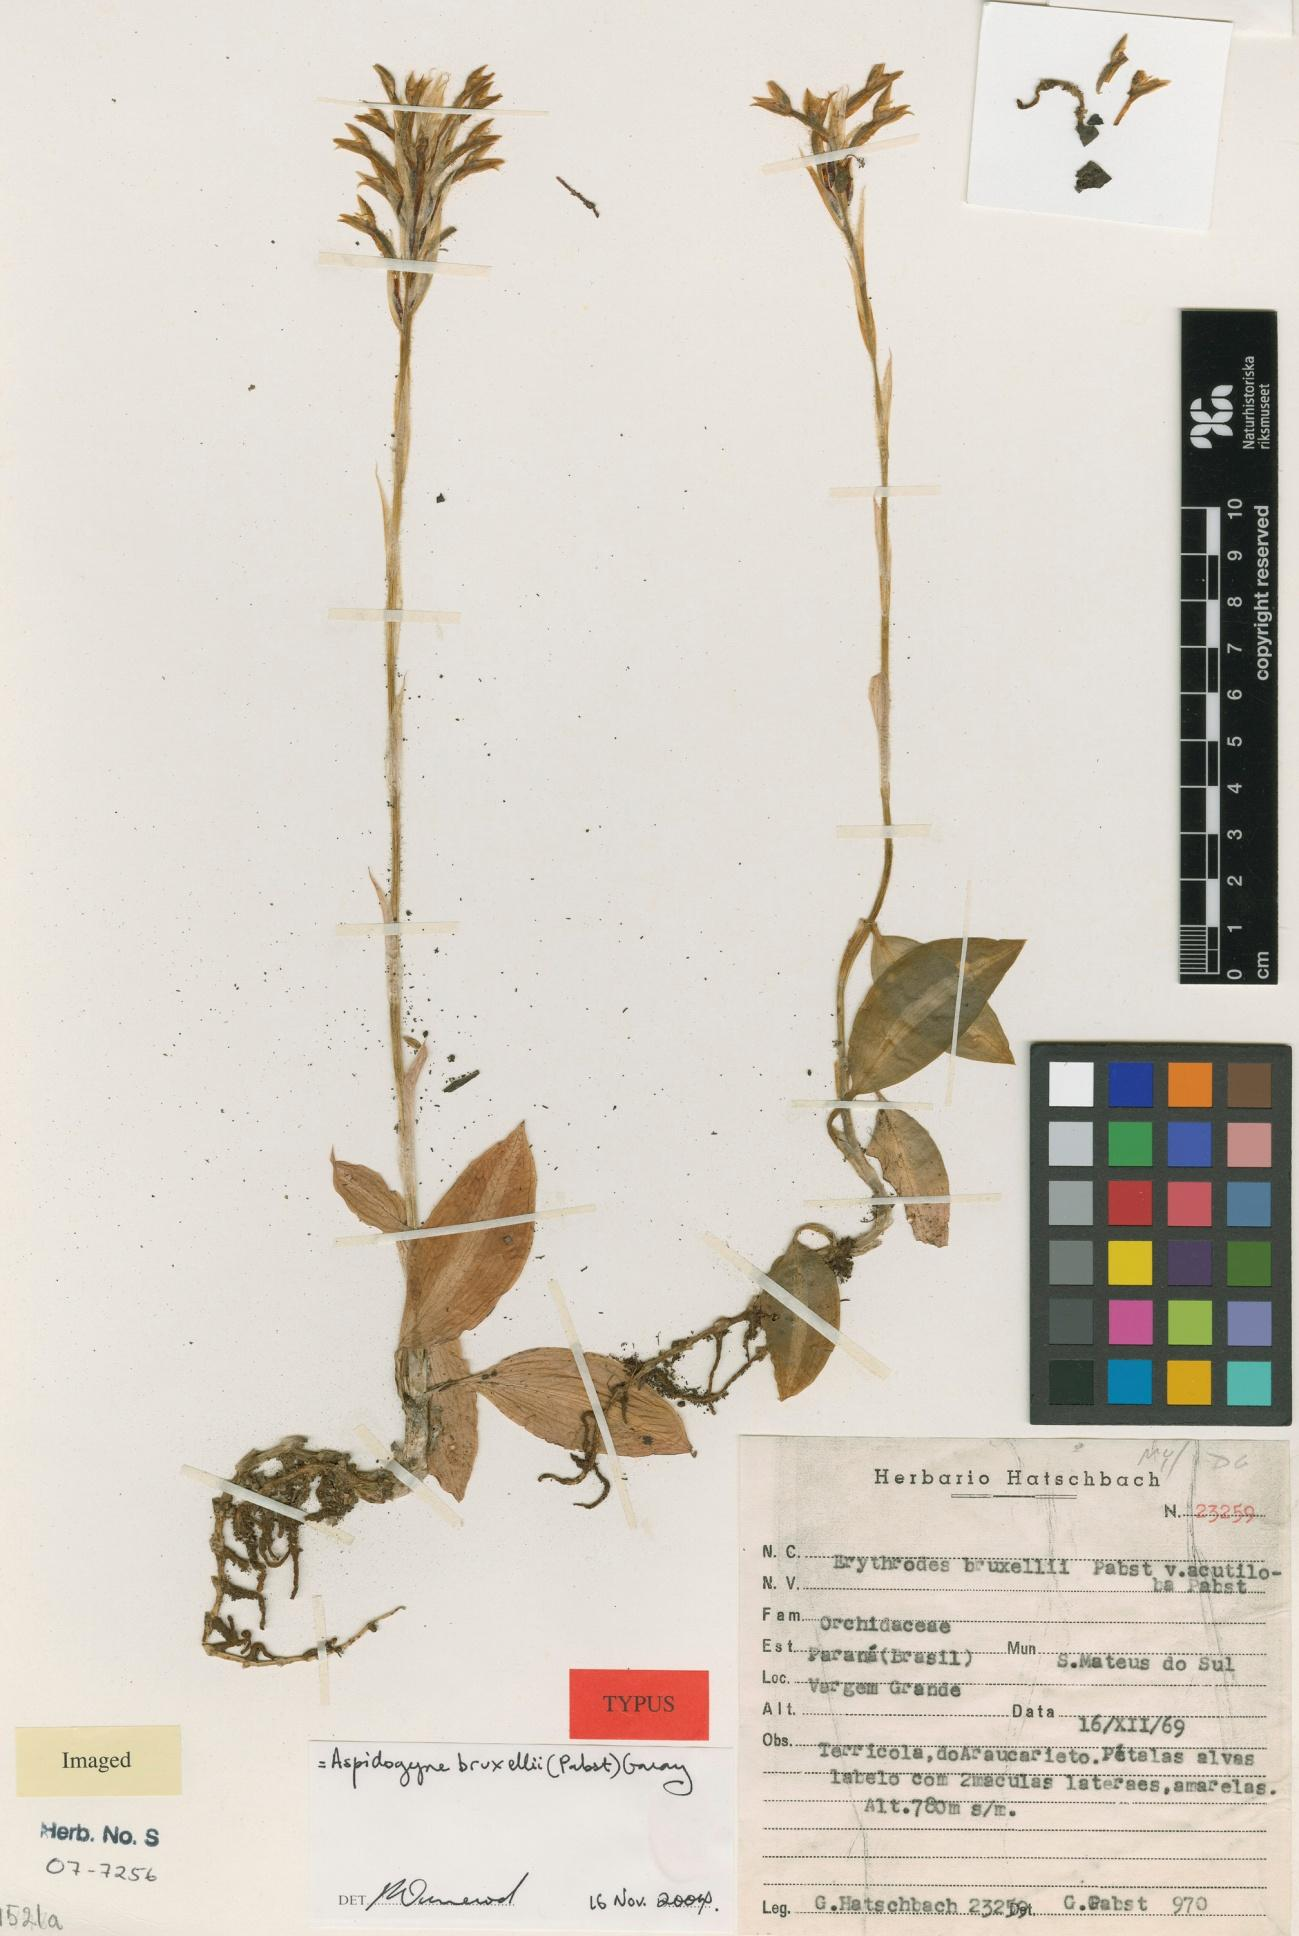 72 Figura 19: Isotypus de Erytrodes bruxellii